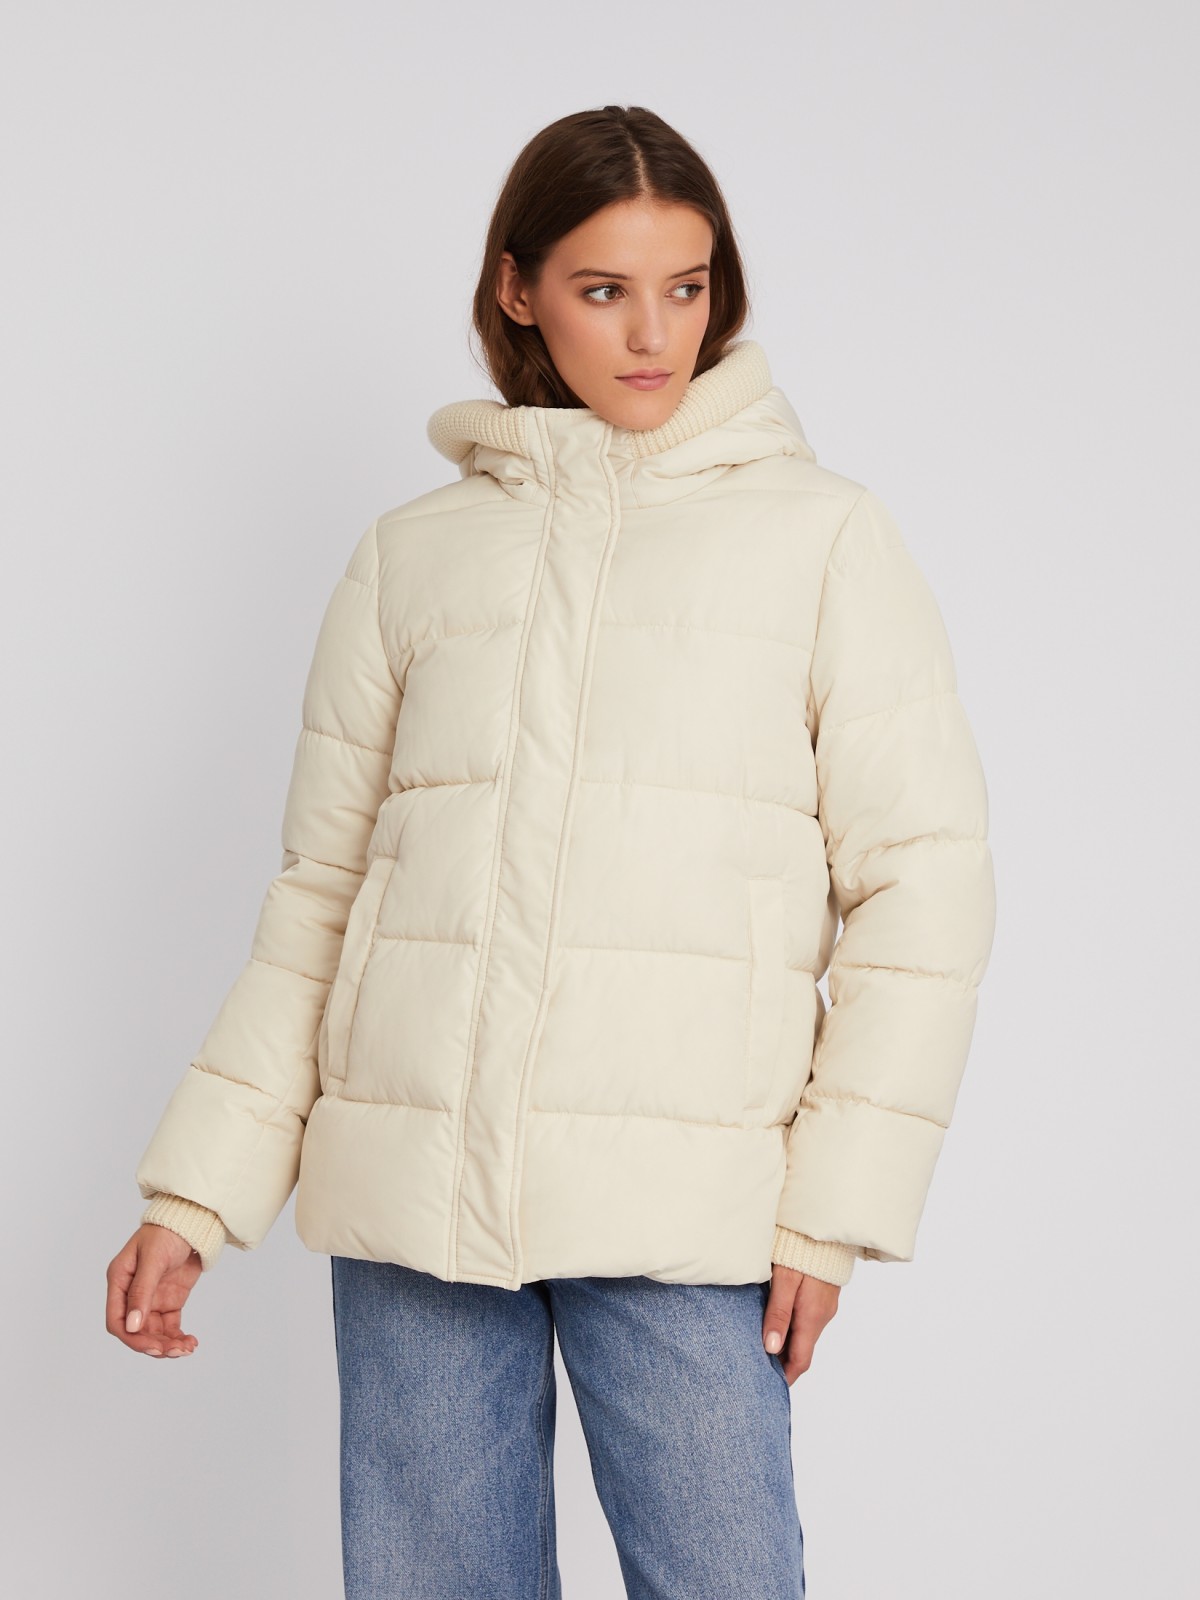 Тёплая стёганая куртка с капюшоном и внутренними манжетами-риб zolla 023345102064, цвет молоко, размер XS - фото 4